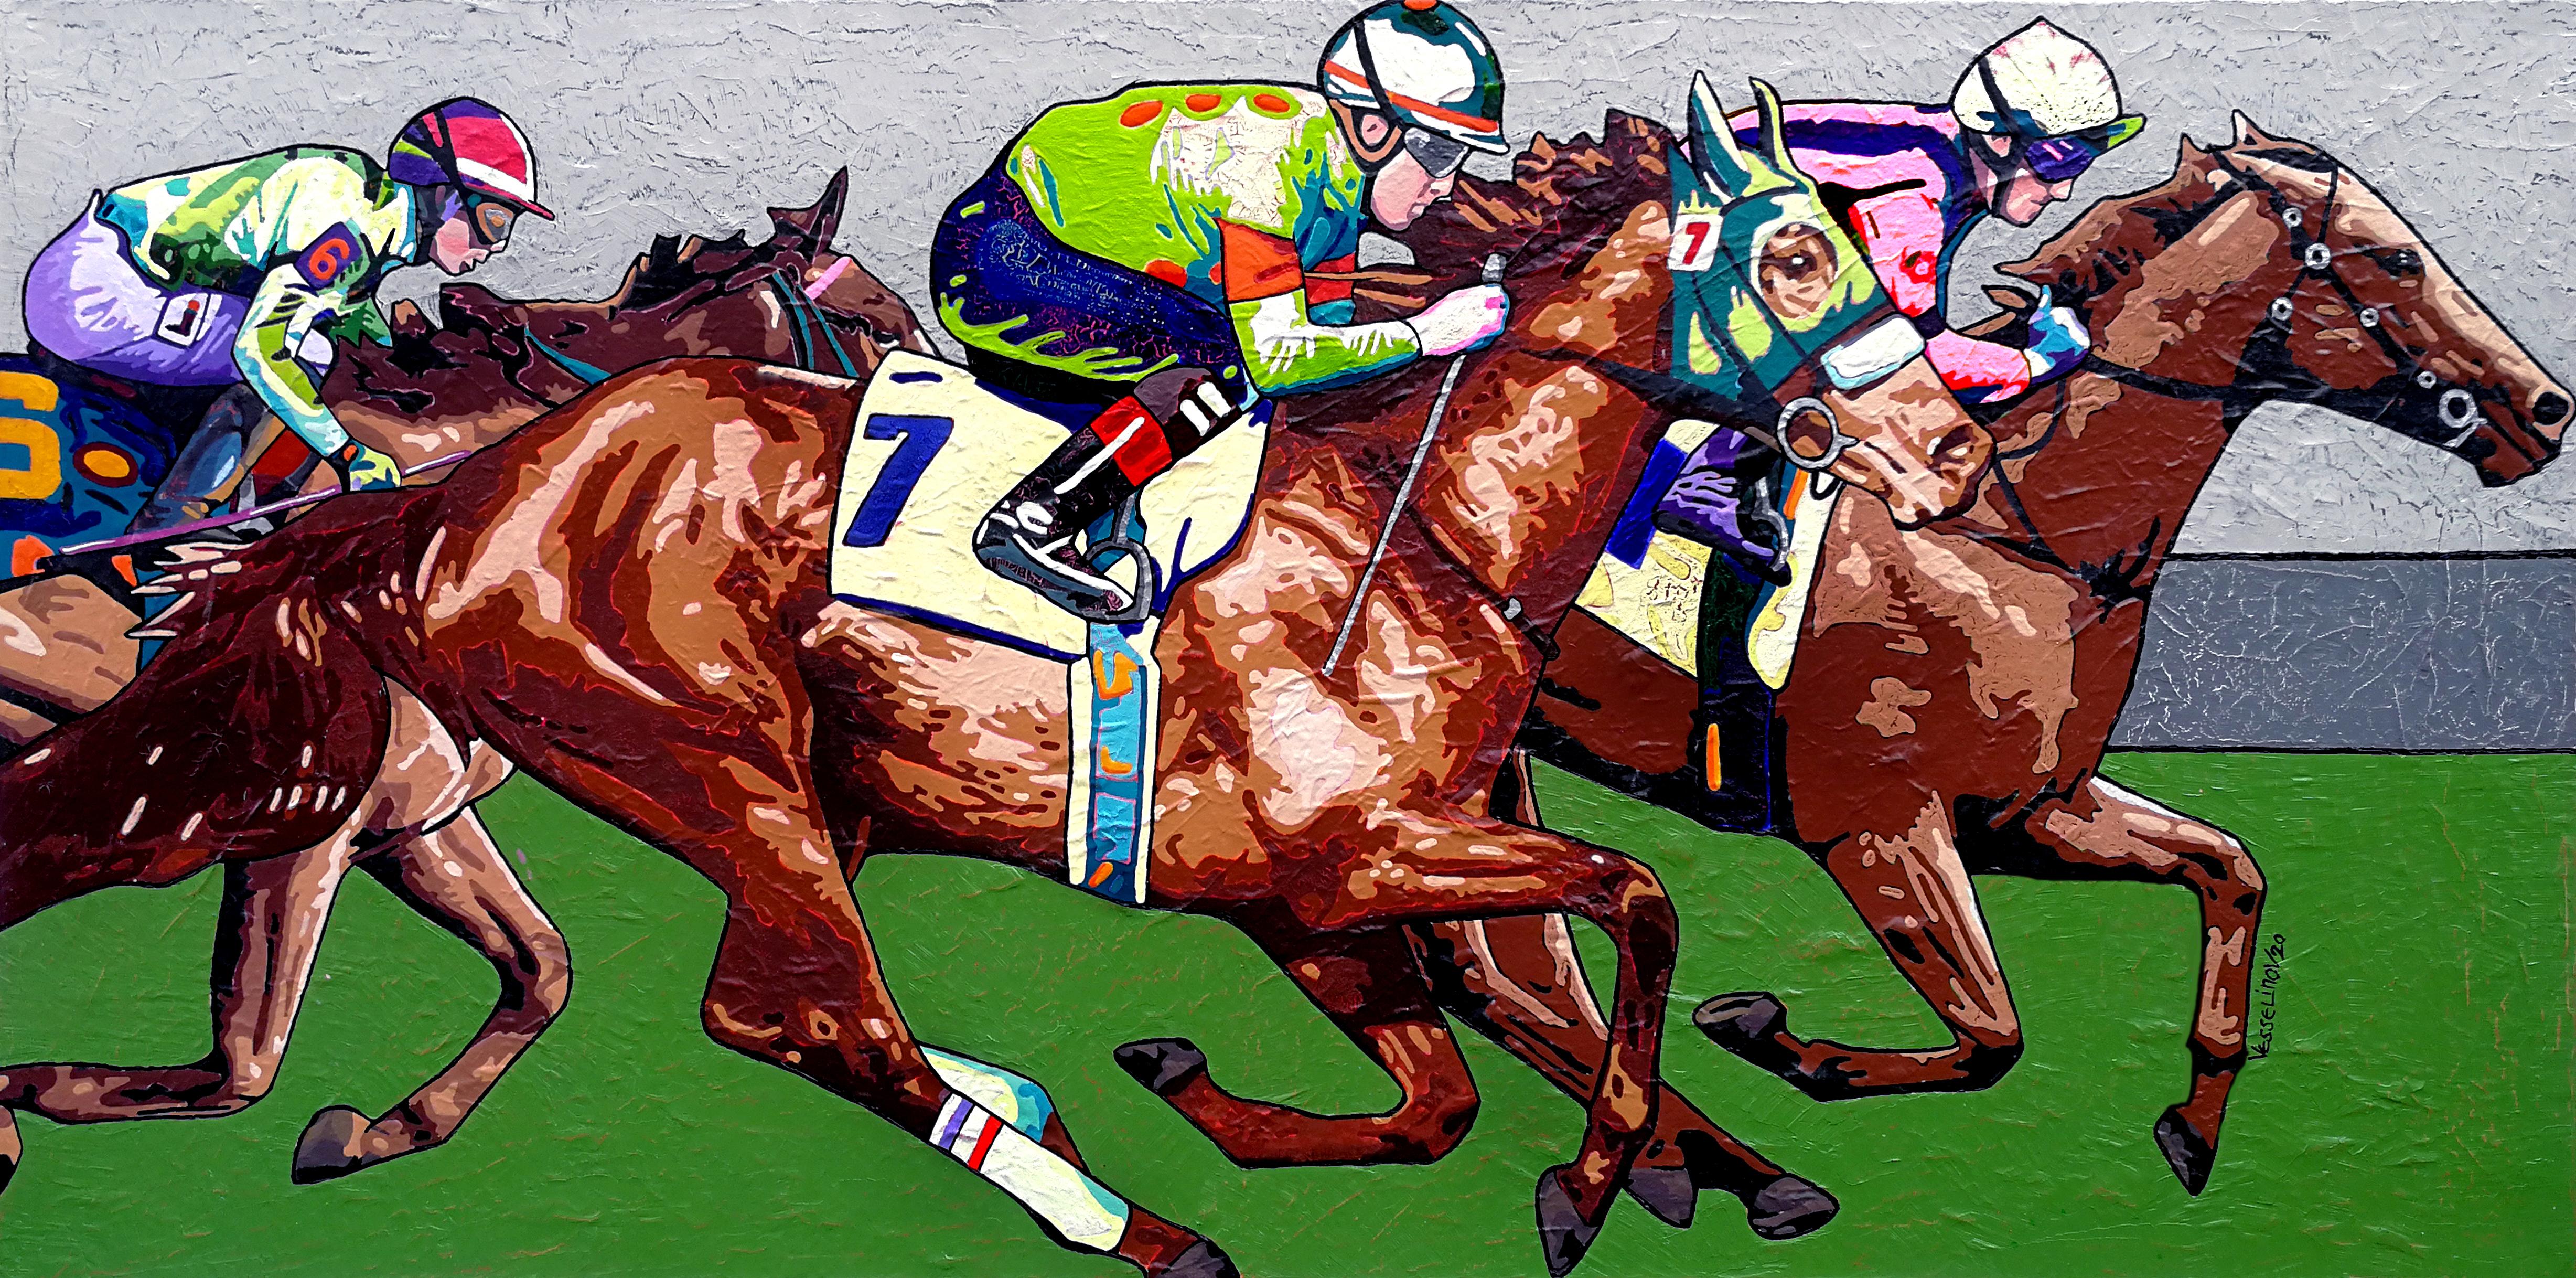 Peinture « Wild Horses, The Race » (Les chevaux sauvages, la course) - Brun, blanc, orange, jaune, vert, bleu, rose et gris - Painting de Vlado Vesselinov